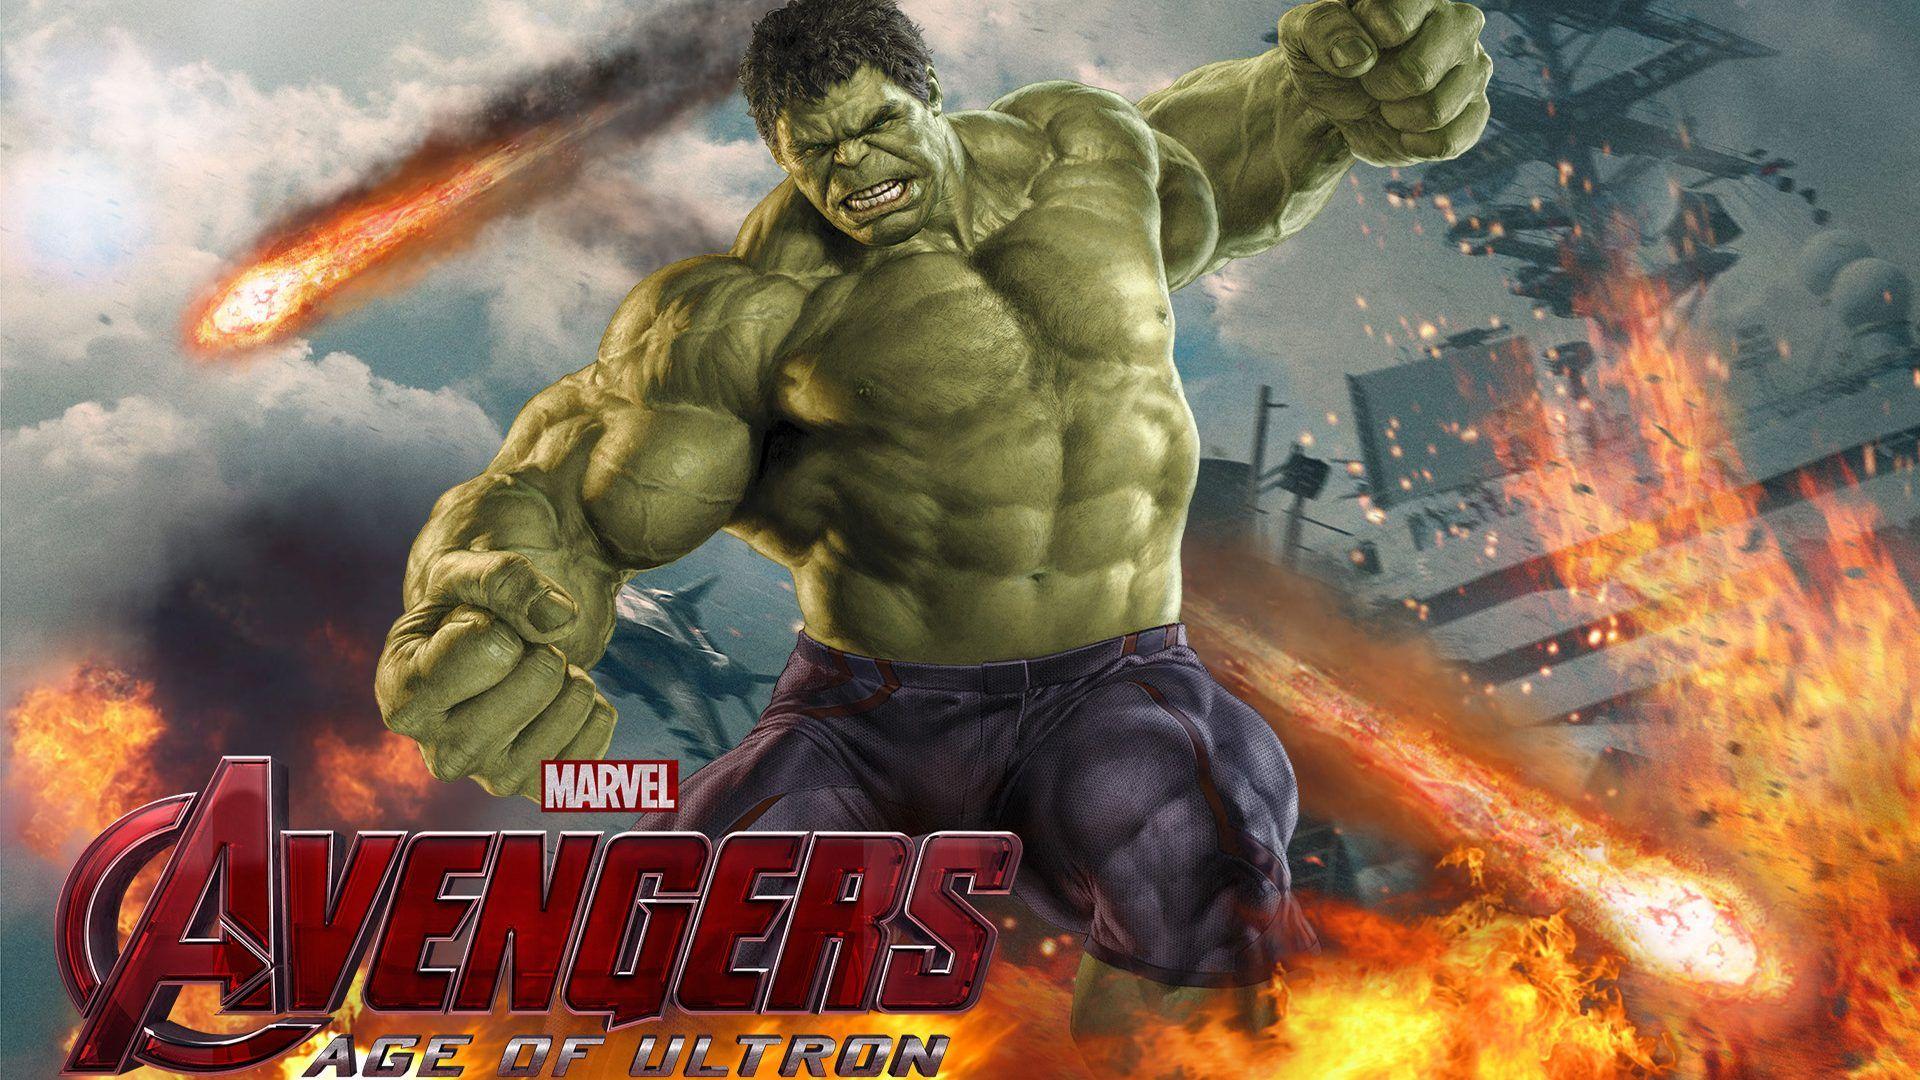 Marvel Movie Avengers Age Of Ultron Hulk Wallpaper HD For Mobile